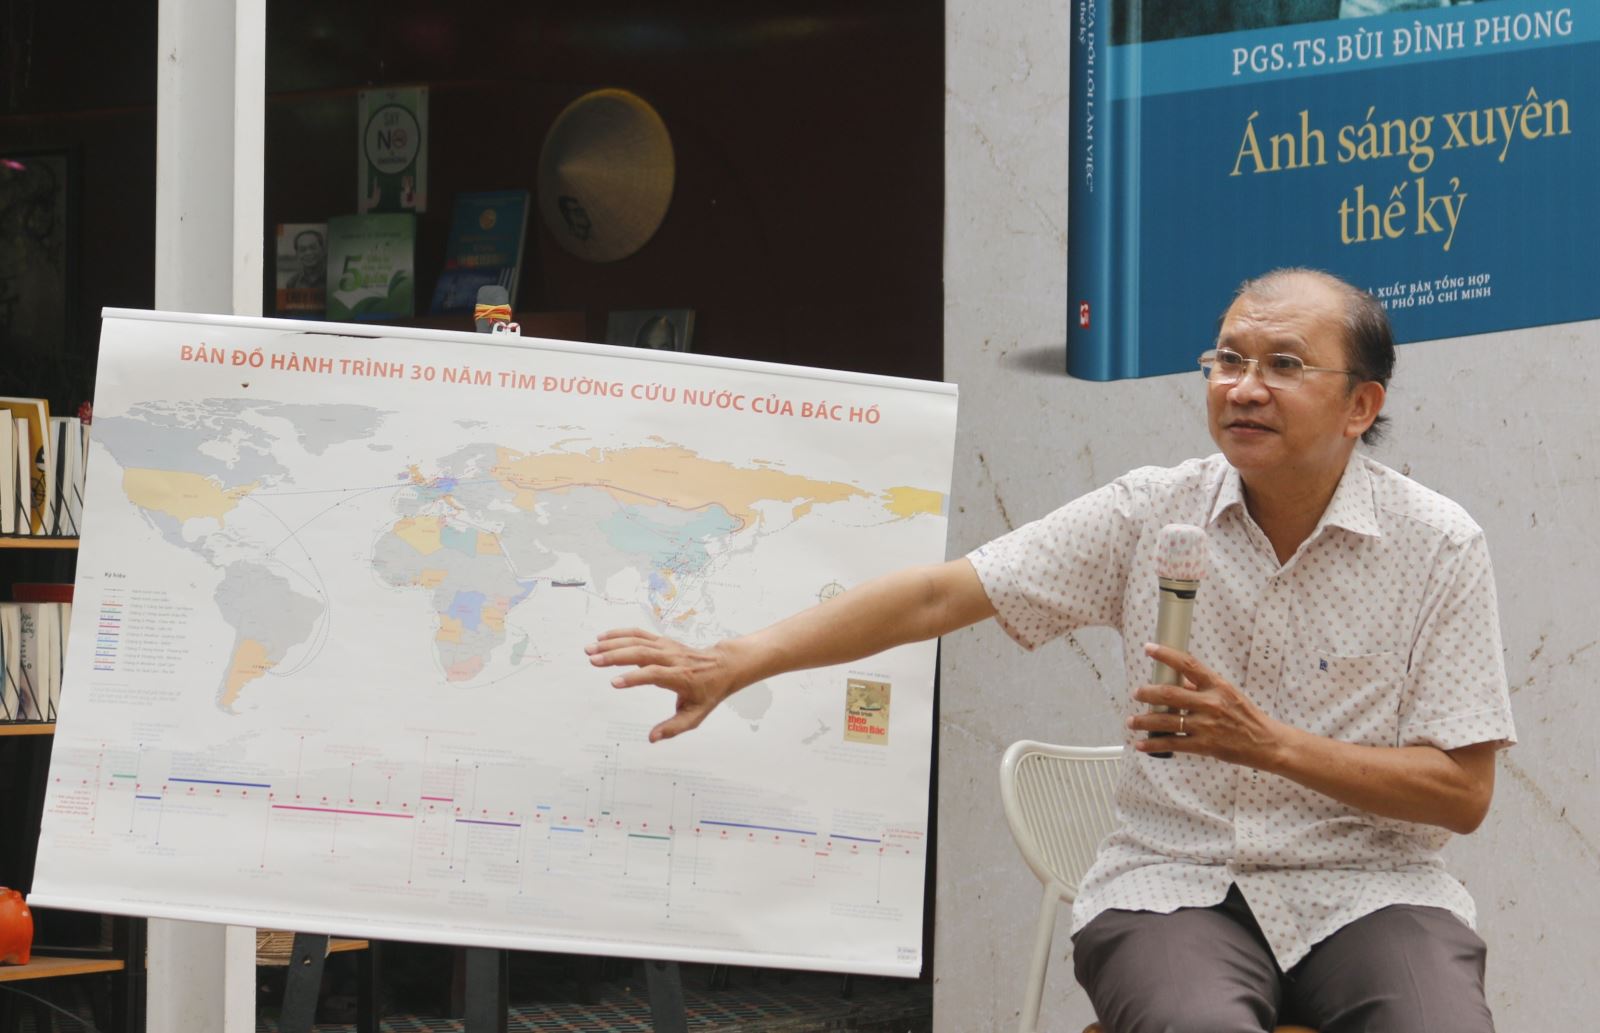 Nhà báo Dương Thành Truyền, nguyên Chủ tịch Hội đồng Thành viên Công ty TNHH MTV NXB Trẻ chia sẻ về quá trình thực hiện bản đồ 